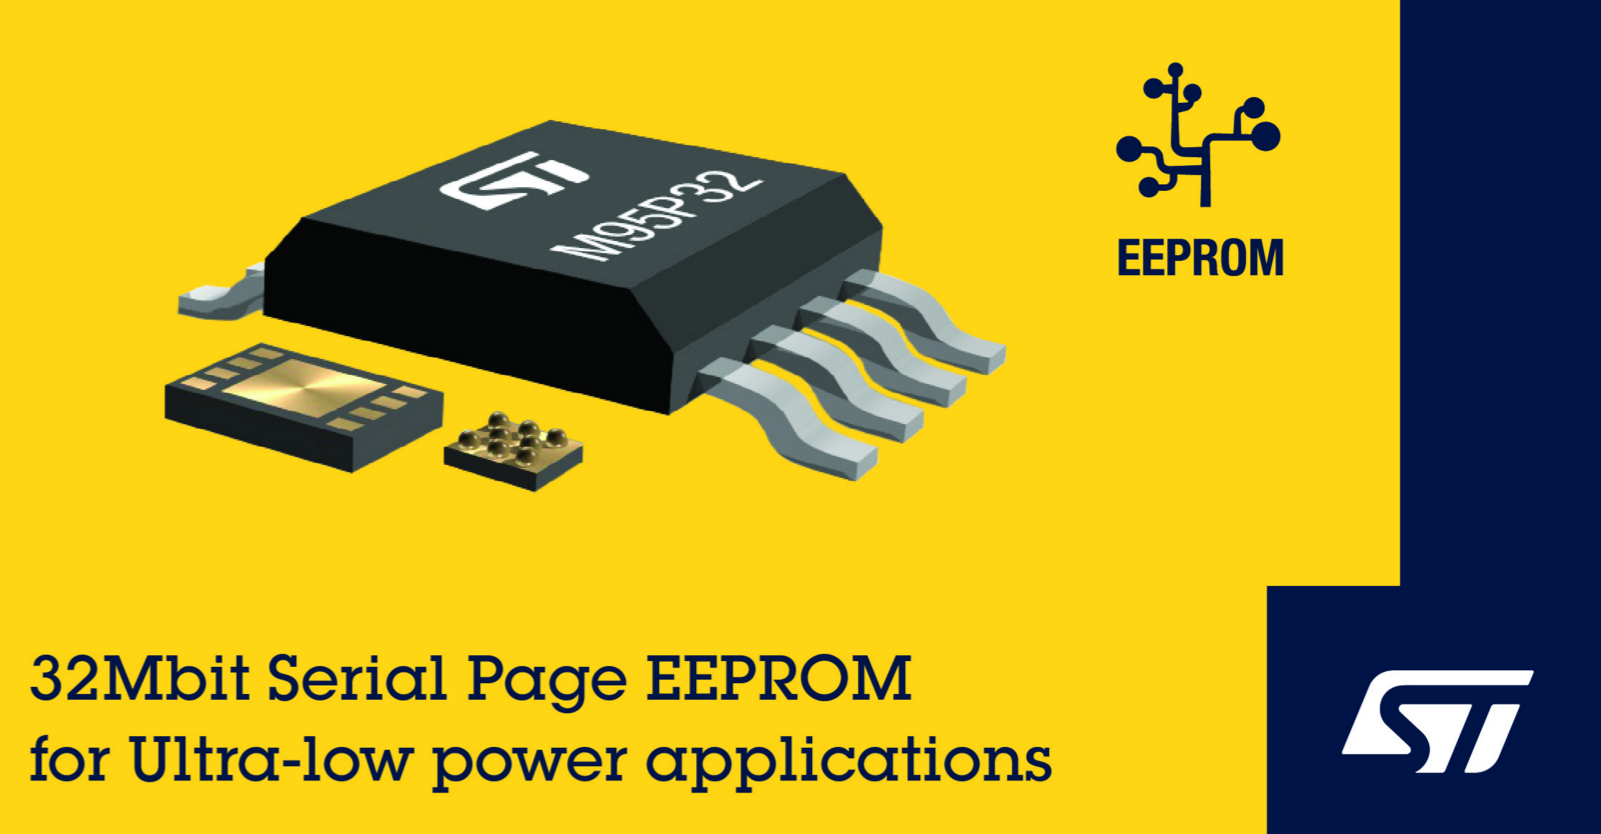 意法半導體非易失性存儲器取得突破，率先在業界推出串行頁EEPROM